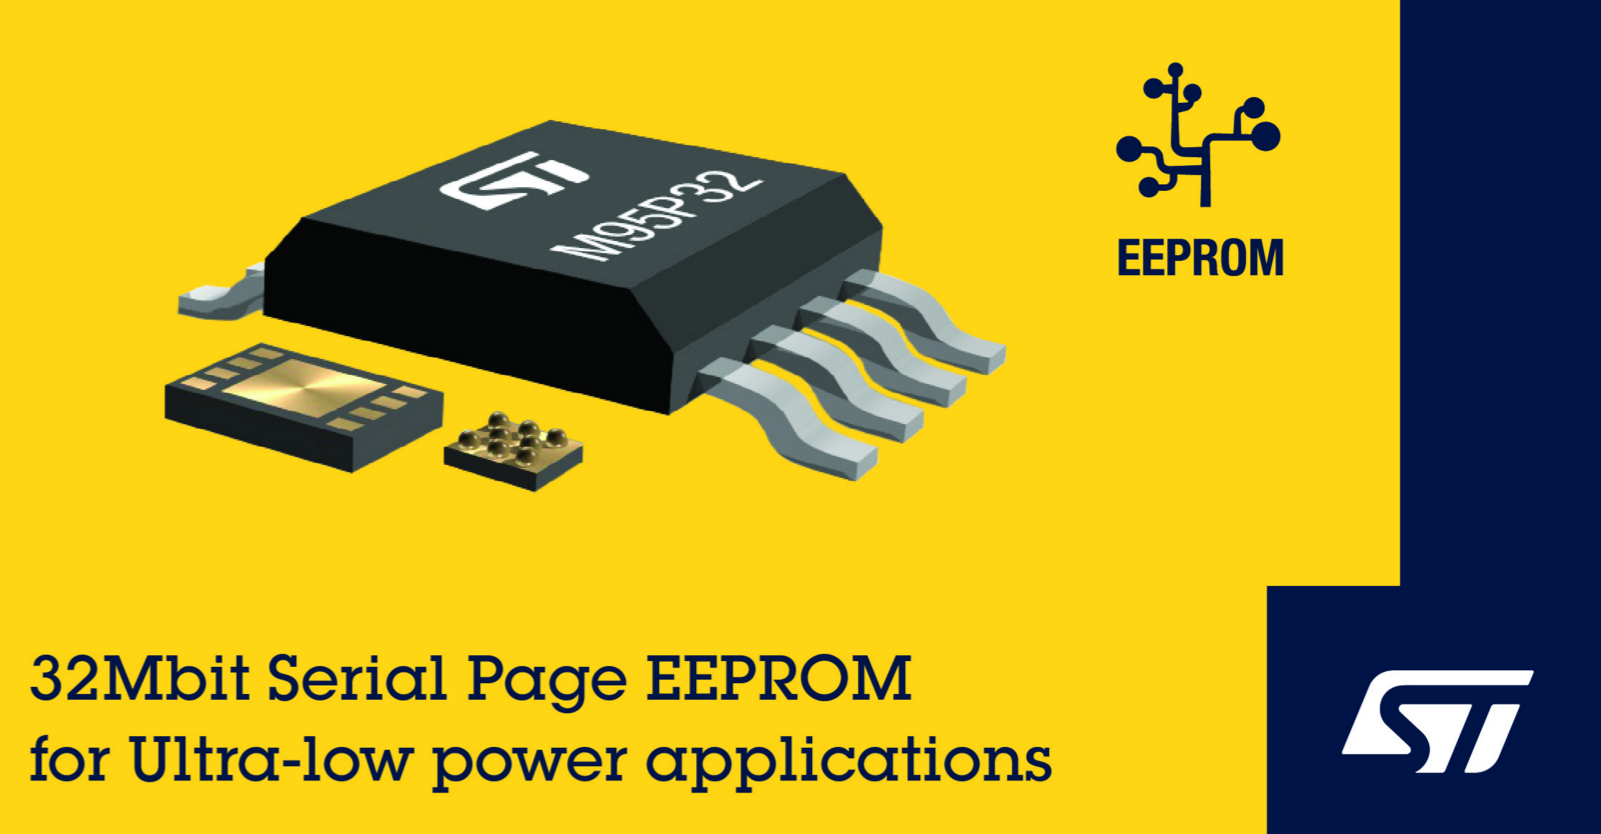 意法半導體非易失性存儲器取得突破，率先在業界推出串行頁EEPROM